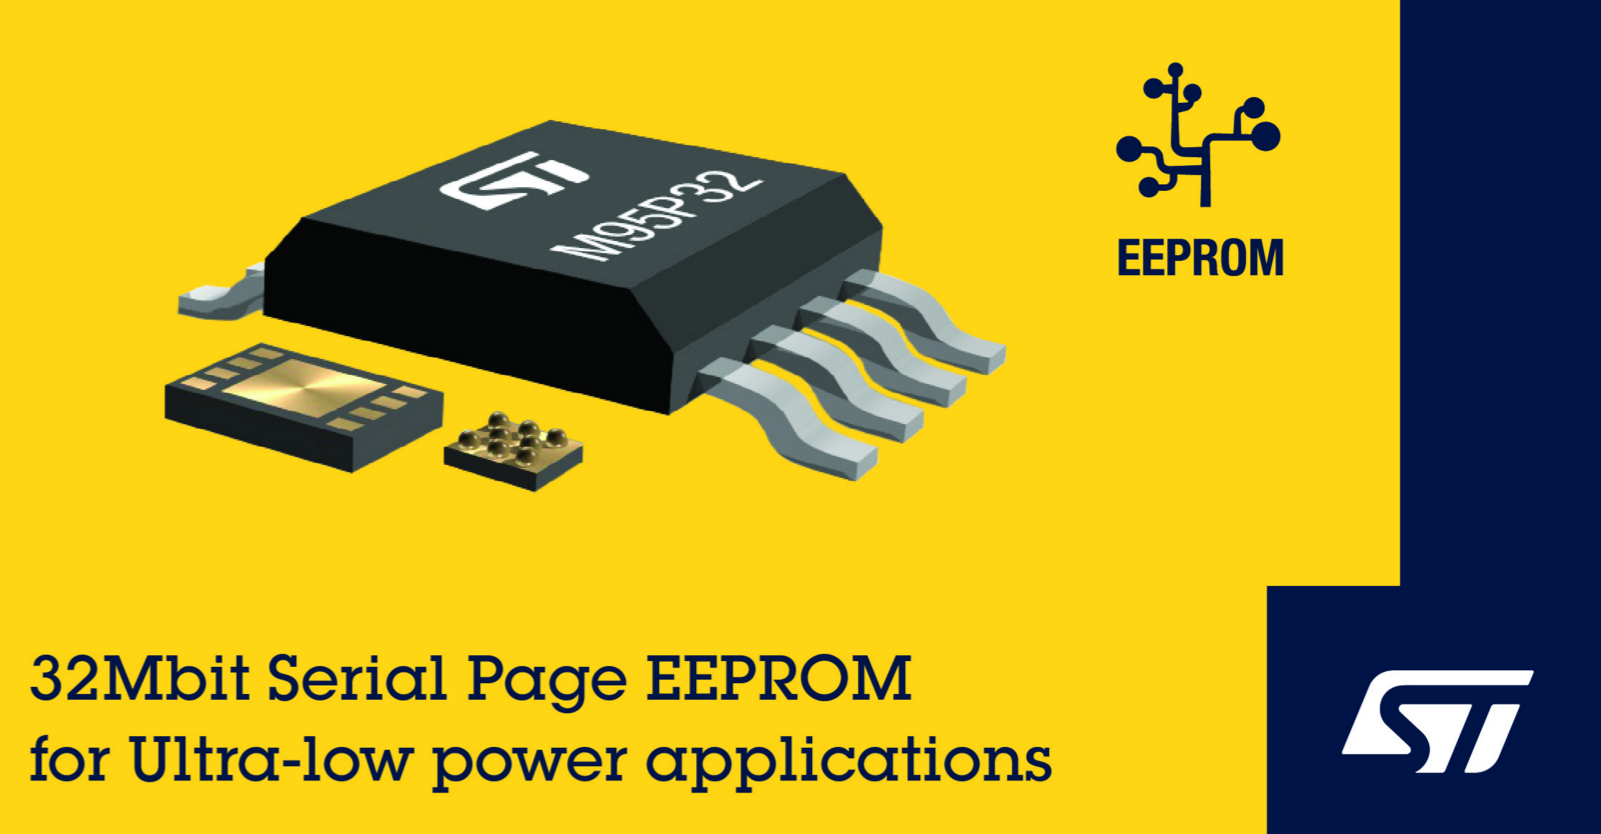 意法半導體非易失性存儲器取得突破，率先在業界推出串行頁EEPROM